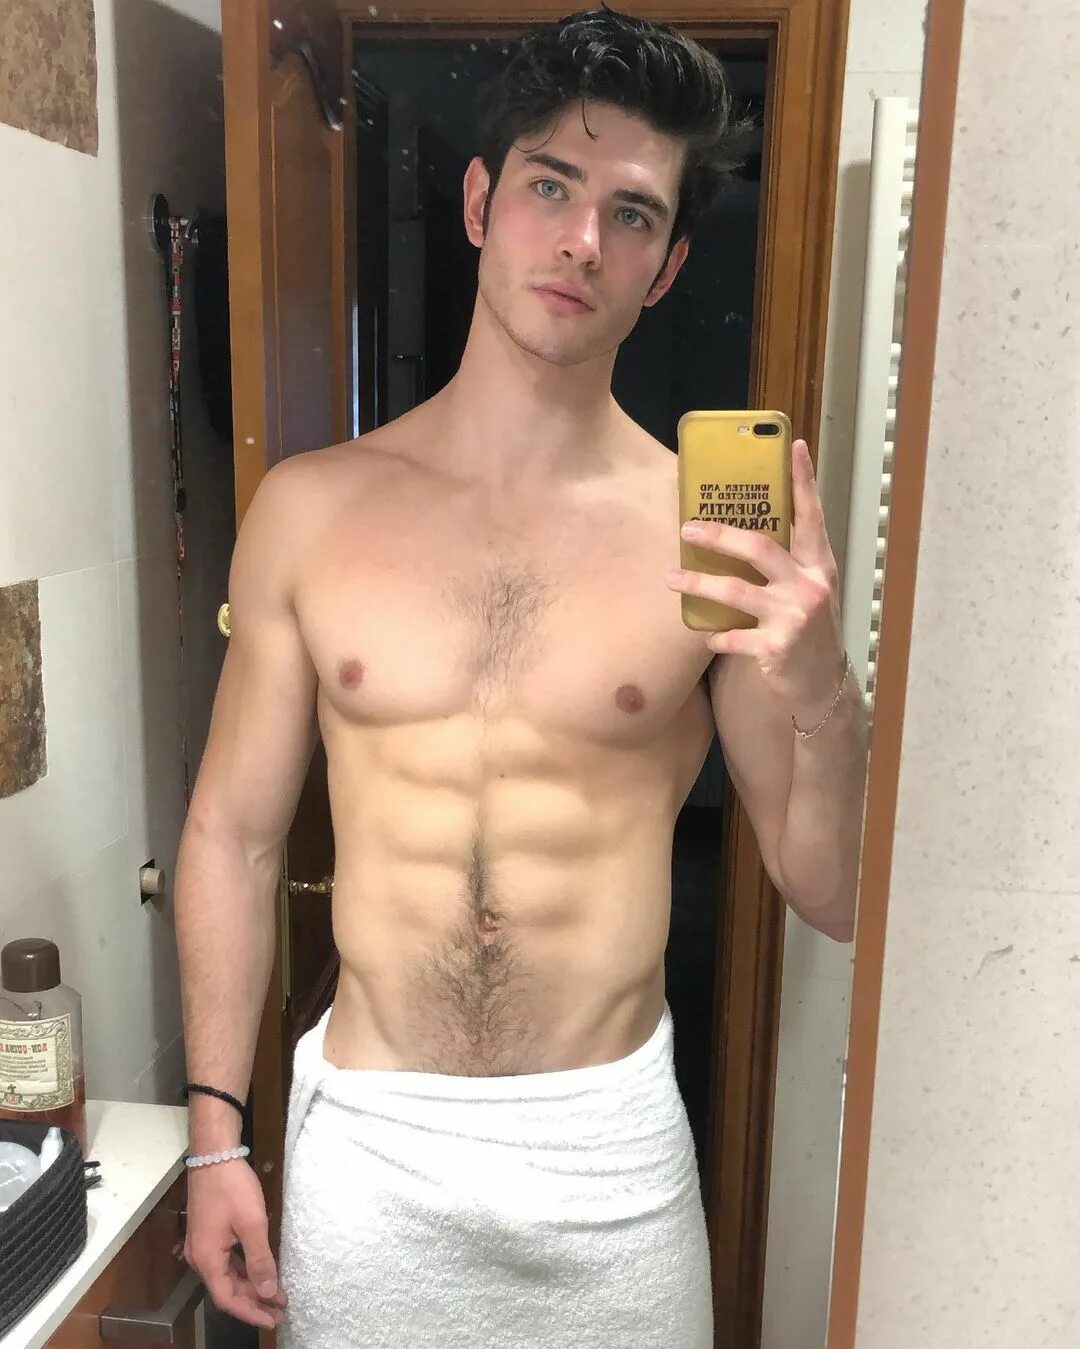 Dani Garcia auf Instagram: "Took literally 3 photos after the shower ...